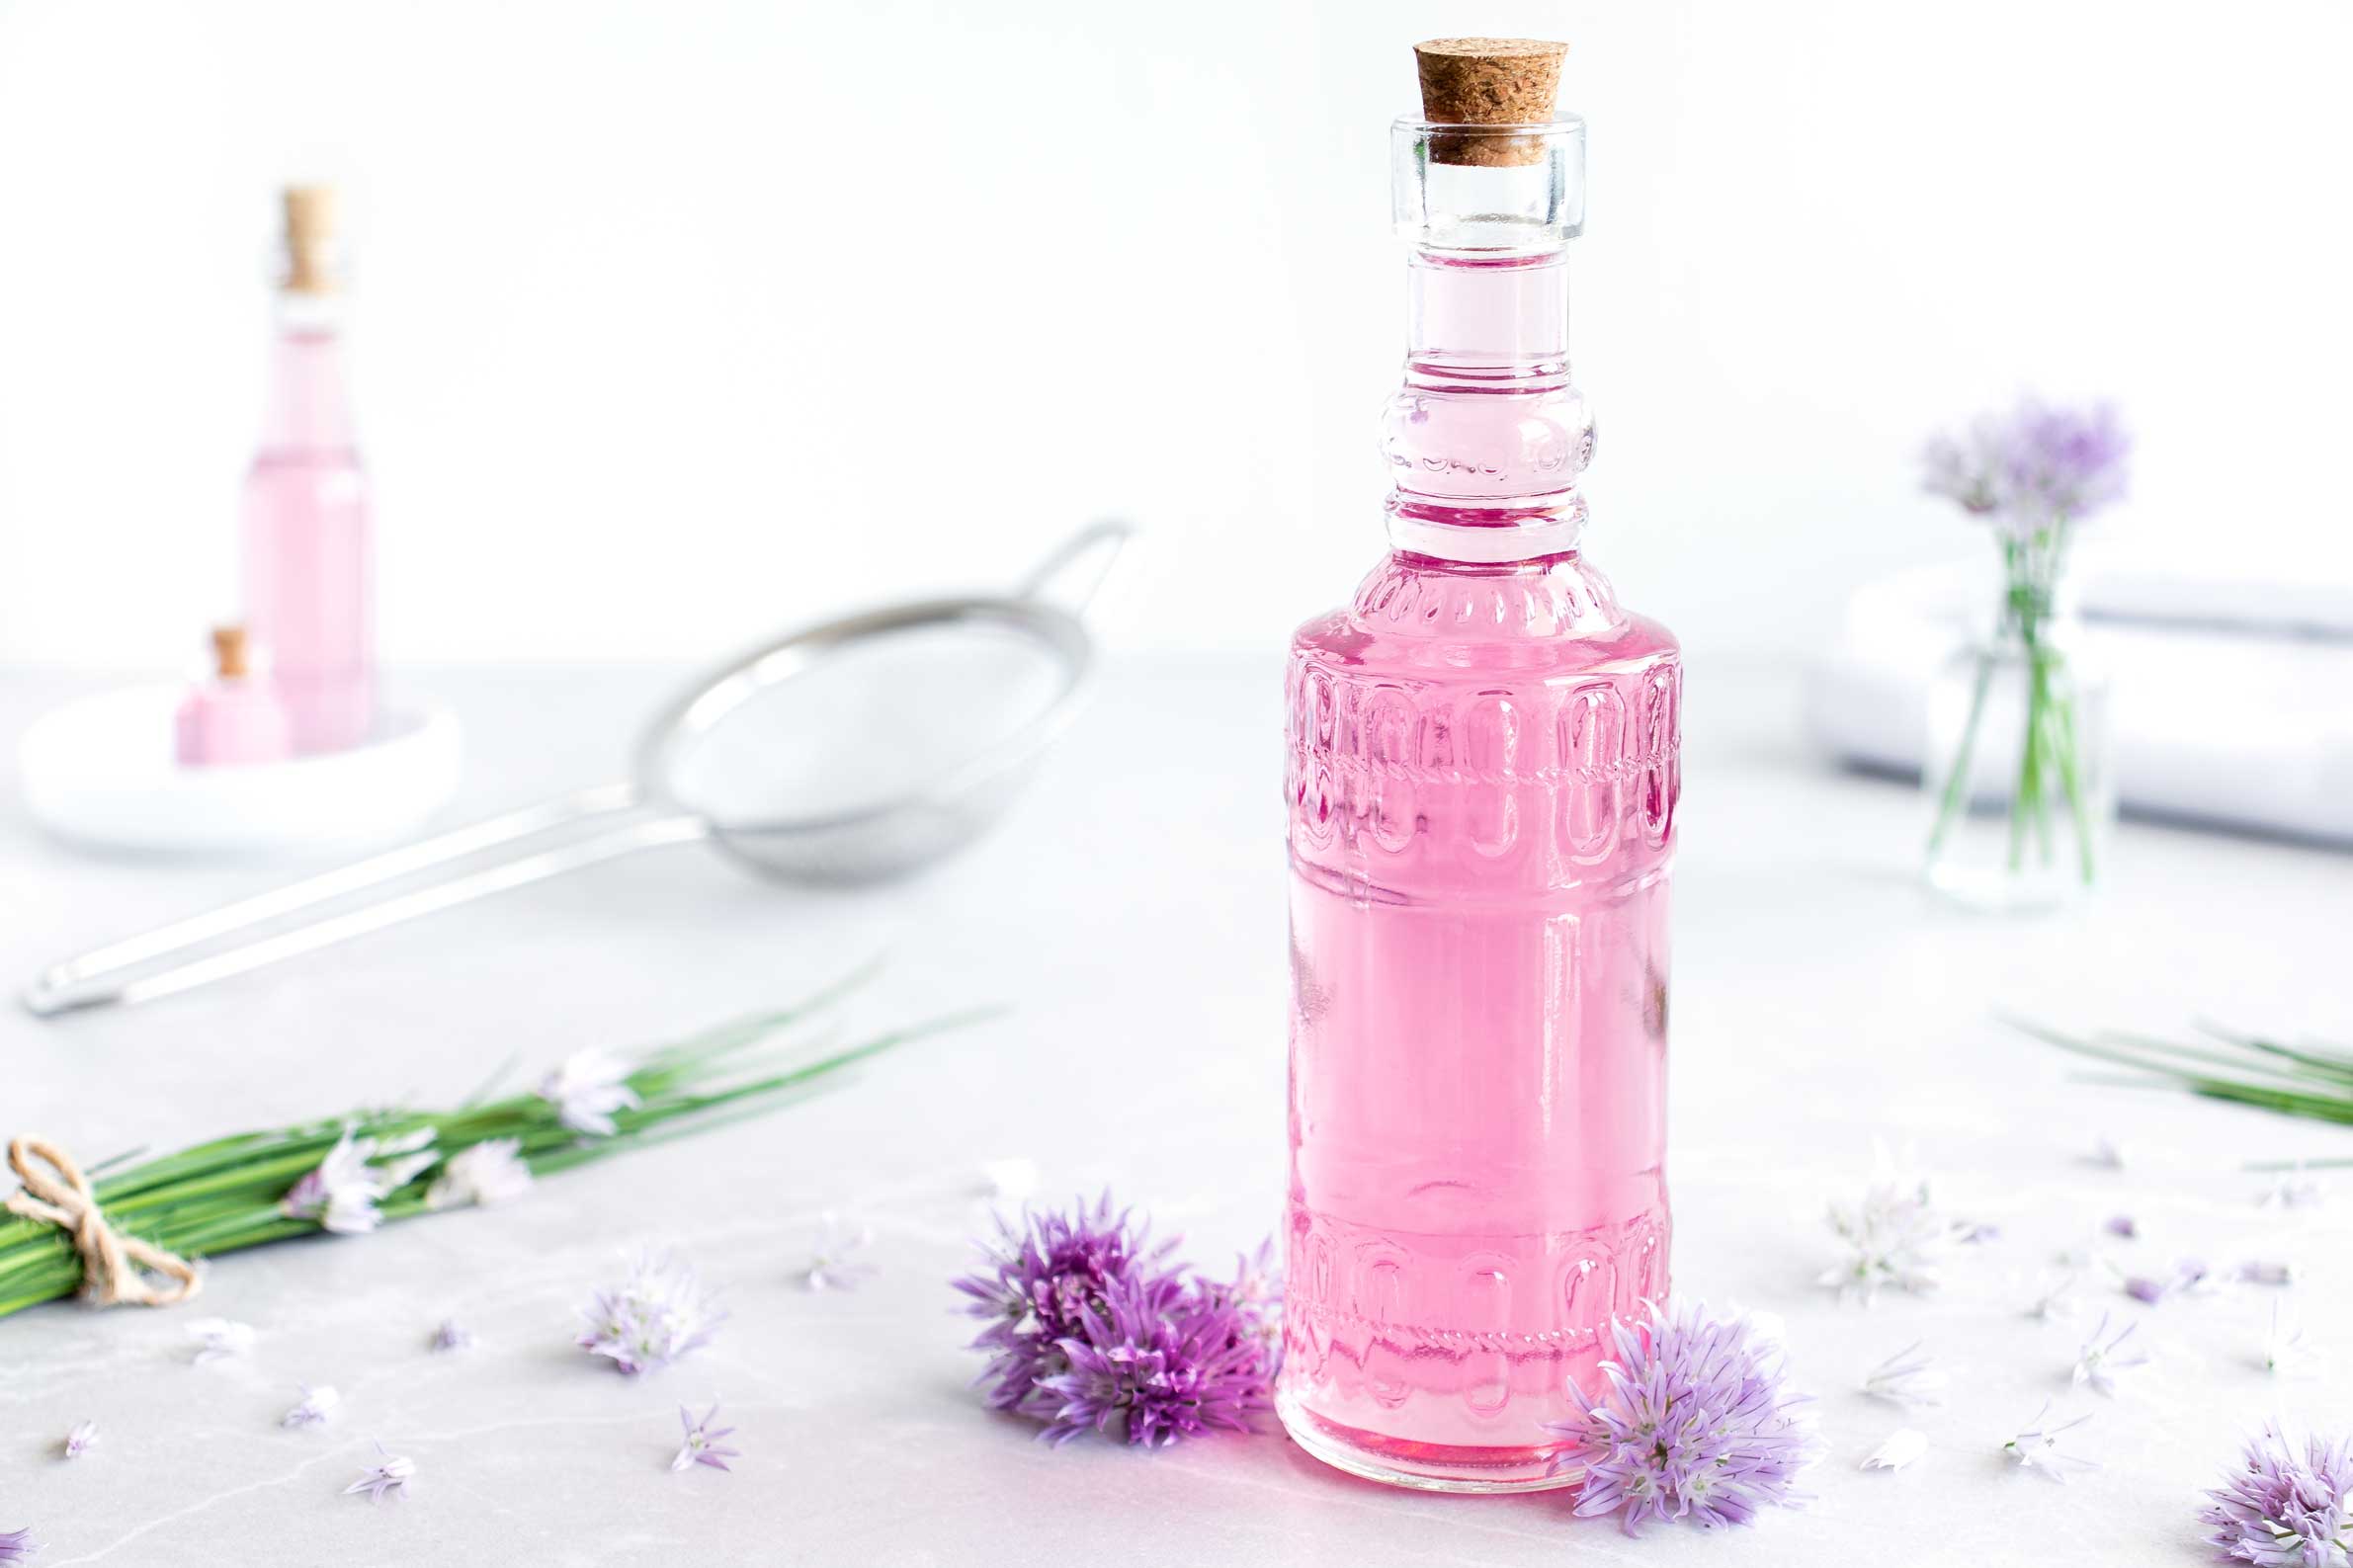 Schnittlauchblütenessig in einer Flasche auf einem weißen Untergrund. Neben dem Schnittlauchblütenessig liegen ein Bund Schnittlauch und mehrere Schnittlauchblüten.